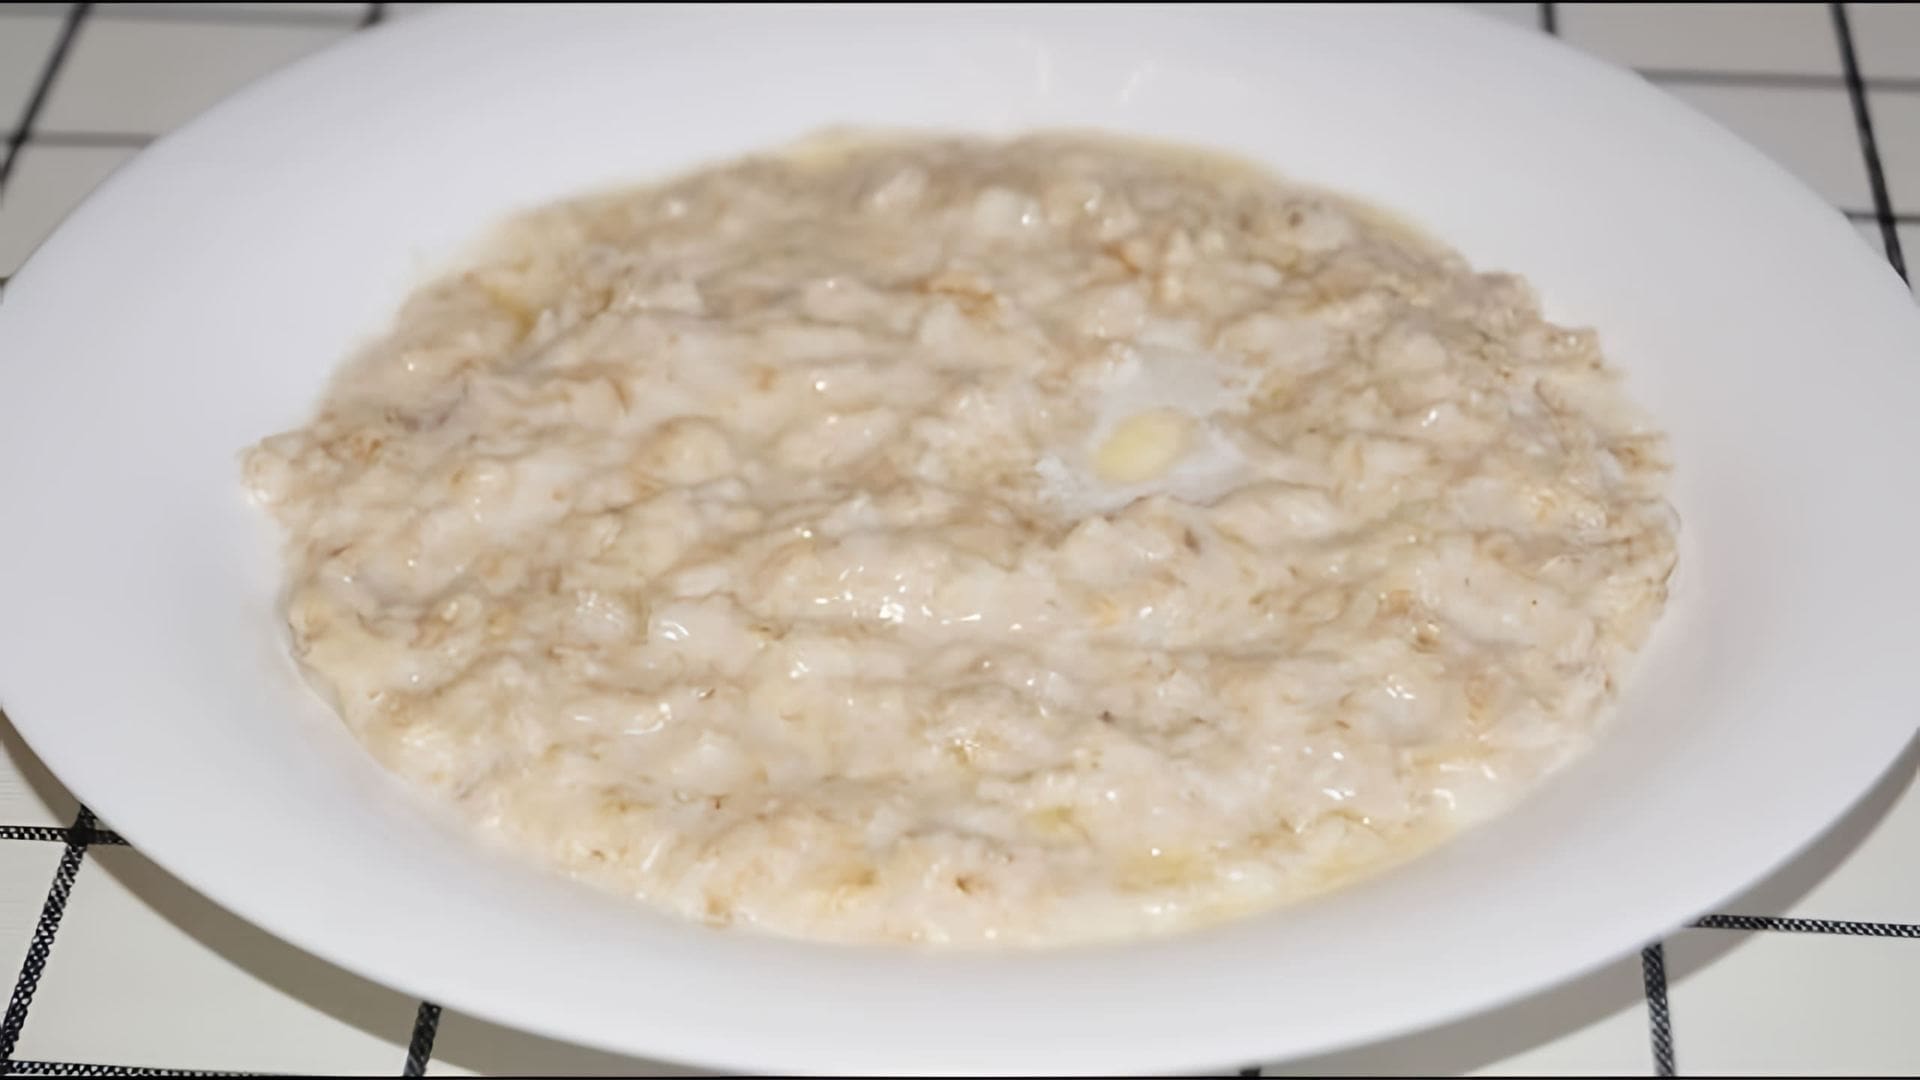 В этом видео демонстрируется приготовление полезного и вкусного завтрака - овсяной каши на молоке